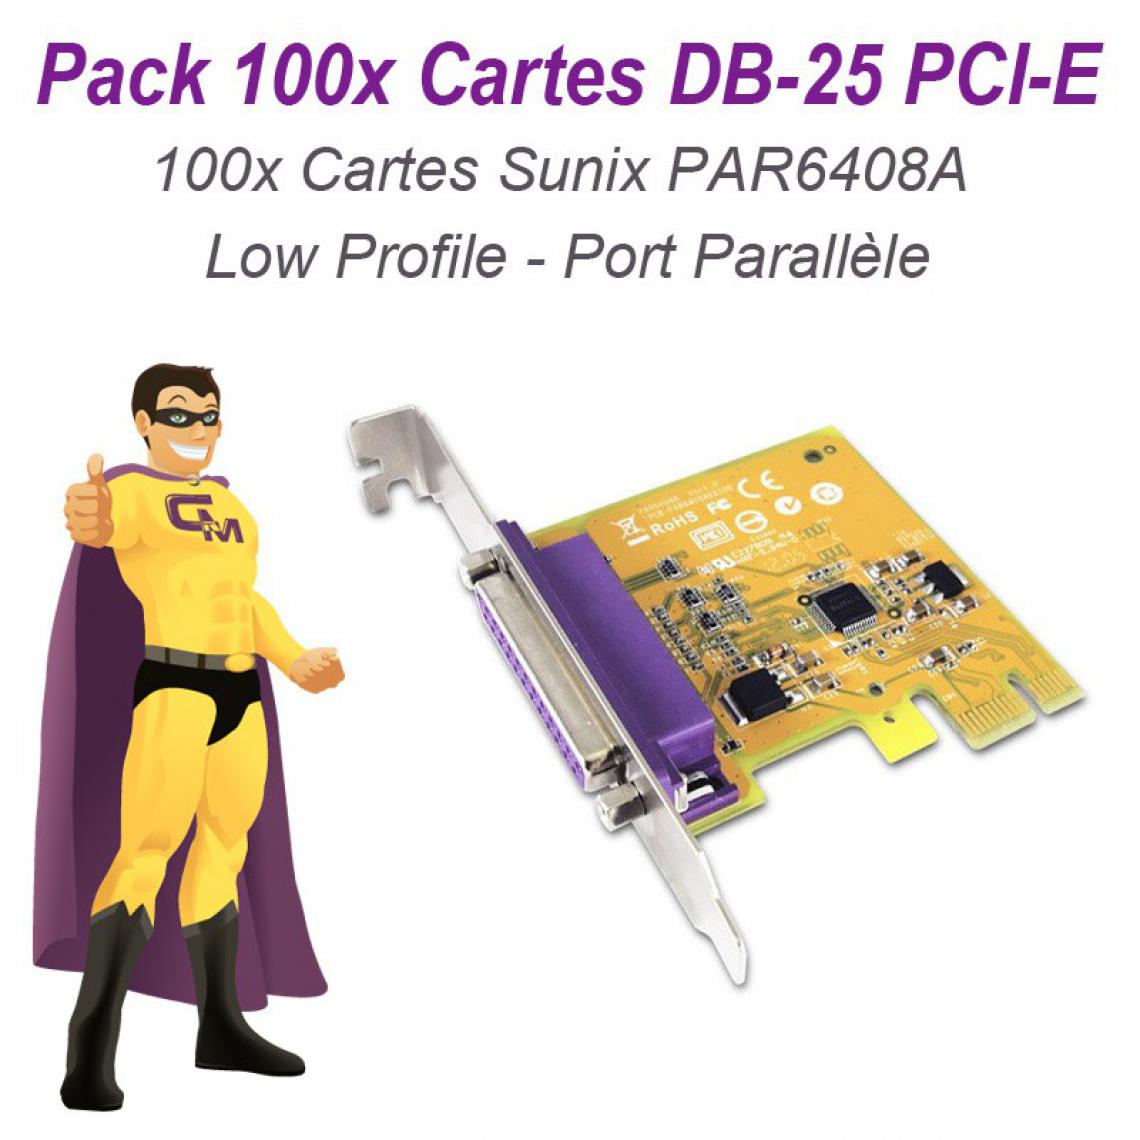 Sunix - Lot 100 Cartes SUNIX Port Parallèle IEEE1284 LPT DB-25 PCIe Low Profile PAR6408A - Carte Contrôleur USB